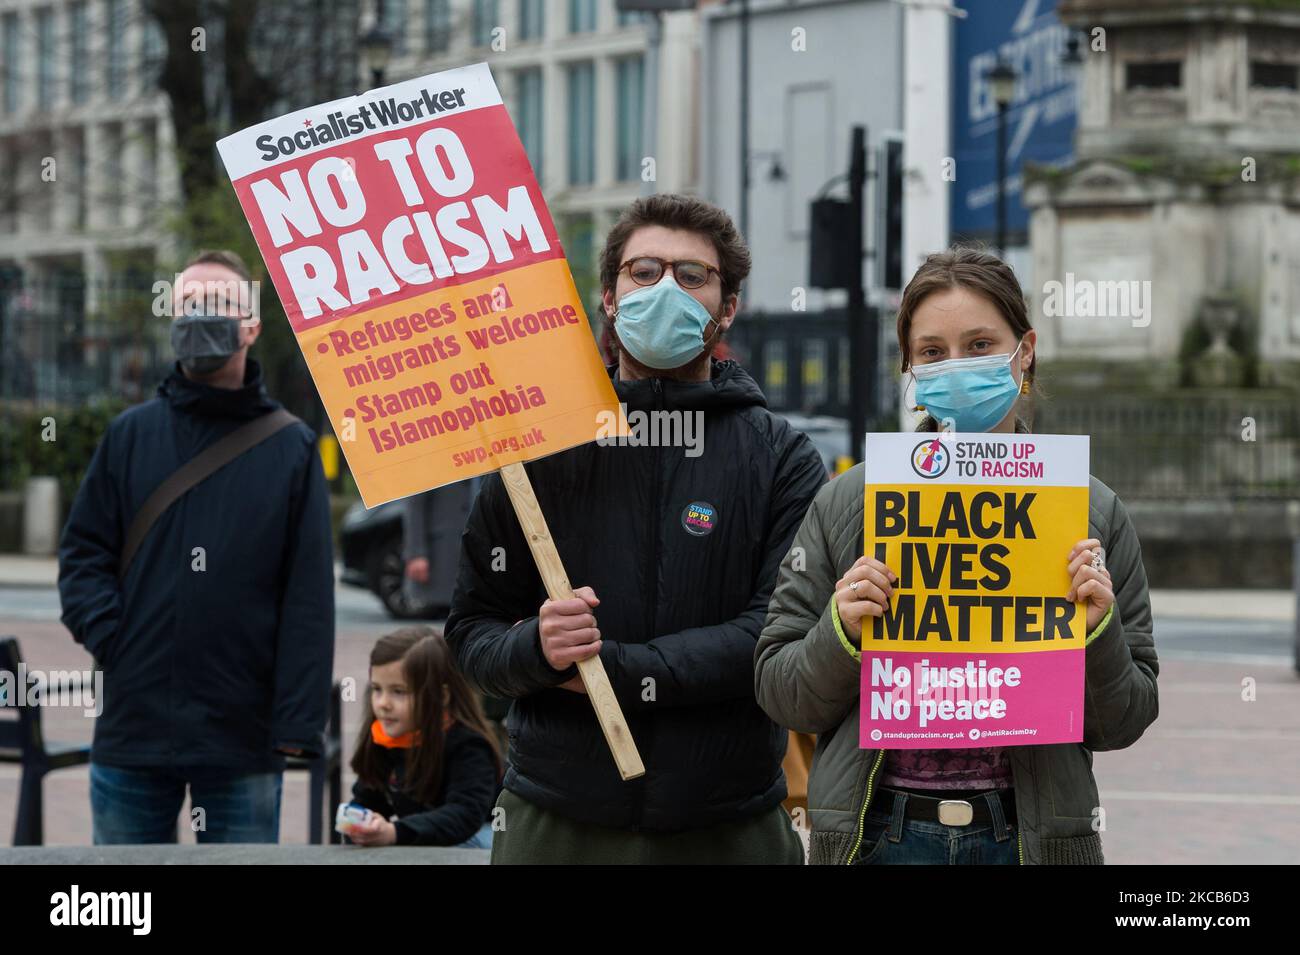 LONDRA, REGNO UNITO - 20 MARZO 2021: La gente si riunisce a Windrush Square a Brixton per protestare contro il razzismo, l'islamofobia, l'antisemitismo e il fascismo in occasione della Giornata dell'Anti-razzismo delle Nazioni Unite, il 20 marzo 2021 a Londra, Inghilterra. I manifestanti dimostrano anche contro la gestione da parte del governo della pandemia di Coronavirus, che colpisce in modo sproporzionato le comunità delle minoranze etniche e nere. (Foto di Wiktor Szymanowicz/NurPhoto) Foto Stock